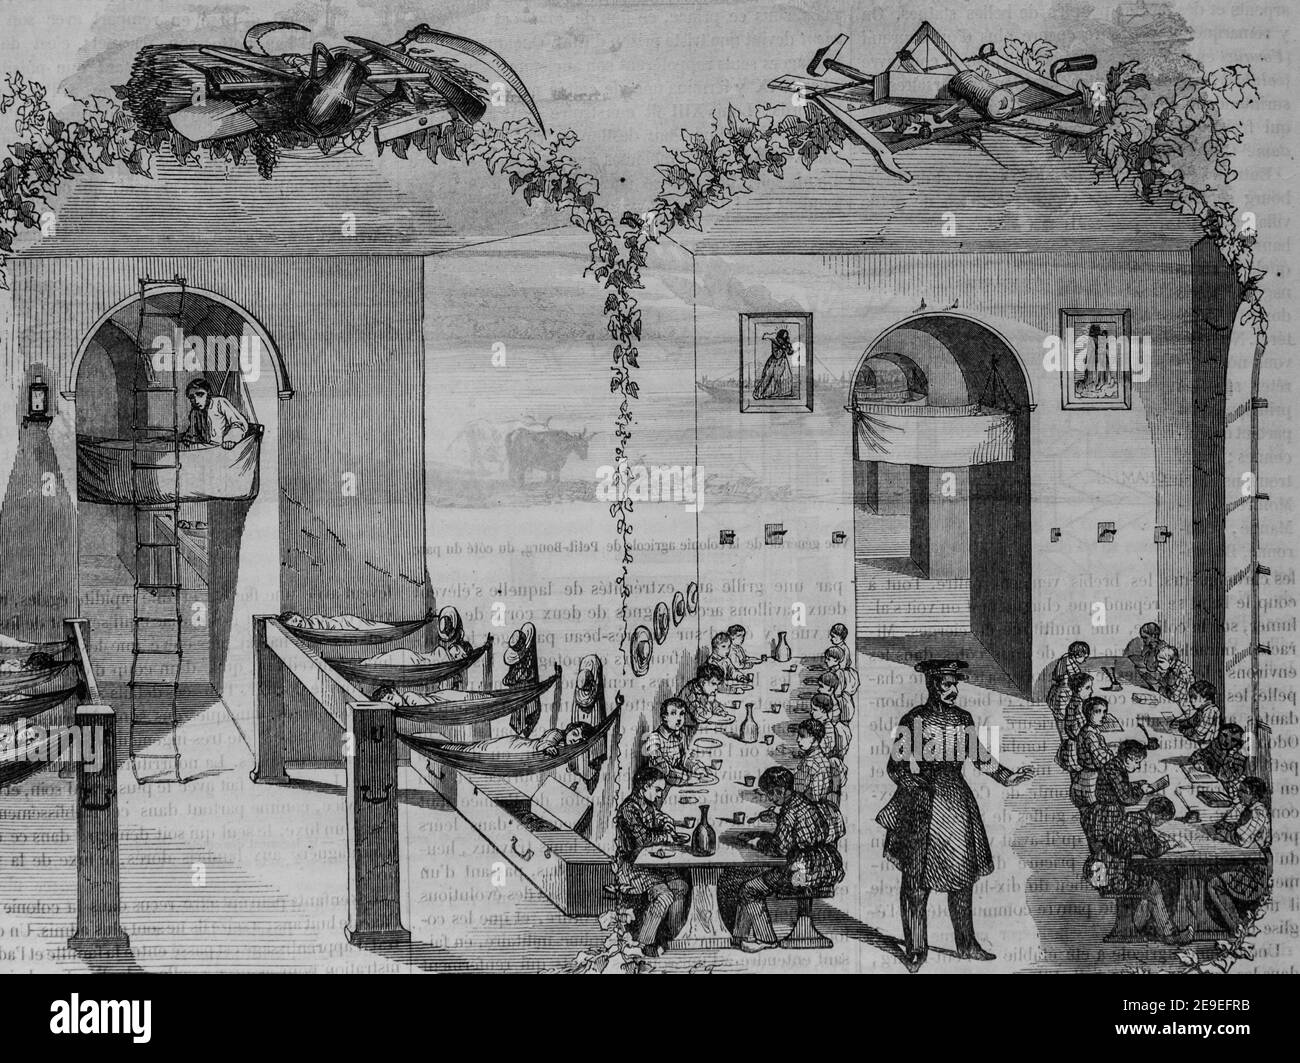 colonie agricole de petit bourg, tableau de paris par edmond texier, editeur paulin et le chavalier 1853 Foto Stock